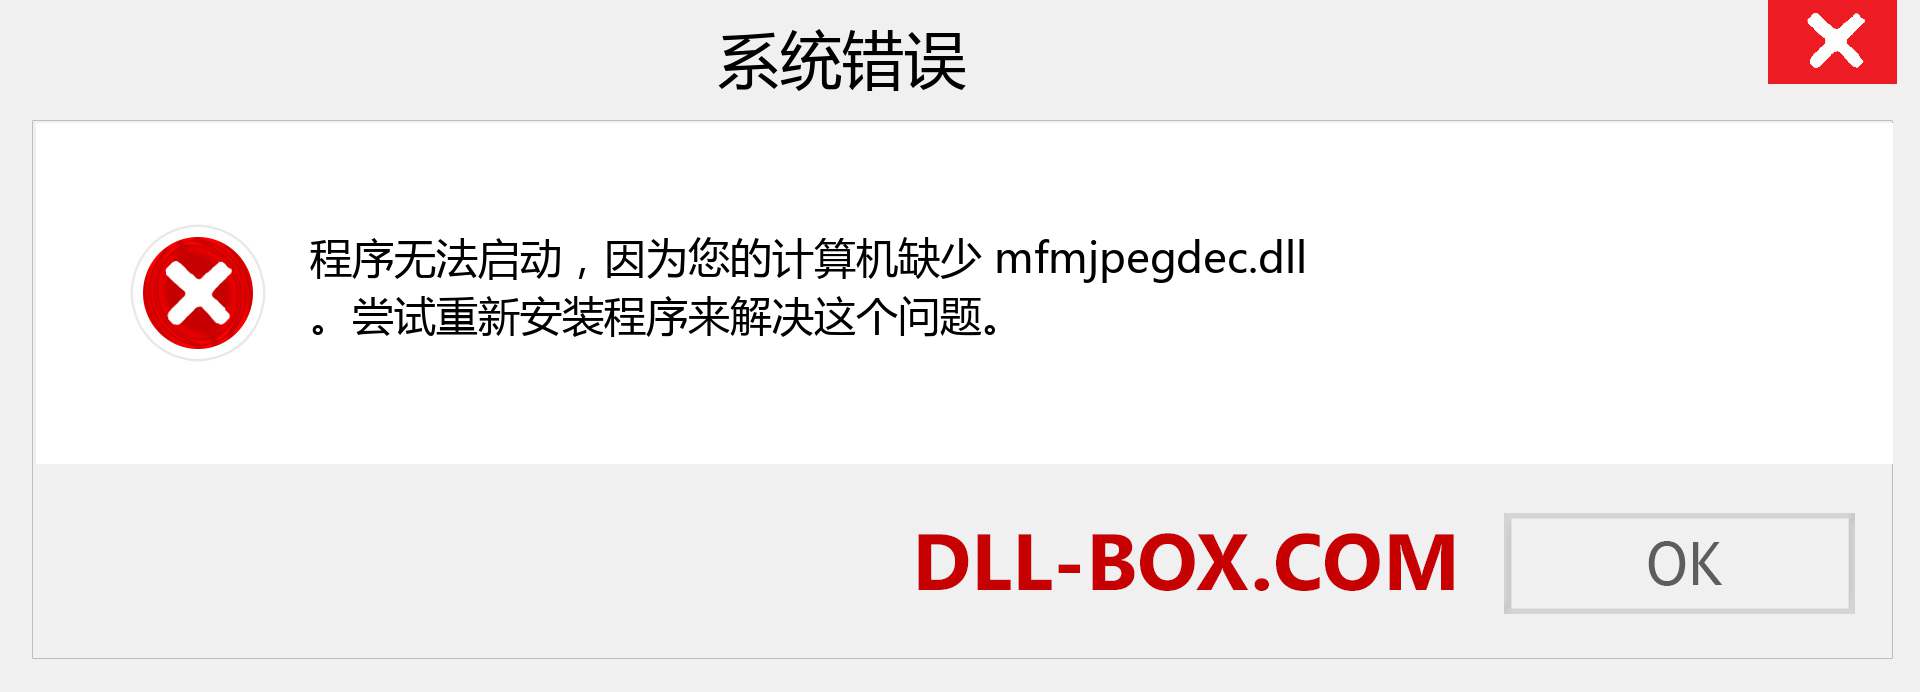 mfmjpegdec.dll 文件丢失？。 适用于 Windows 7、8、10 的下载 - 修复 Windows、照片、图像上的 mfmjpegdec dll 丢失错误